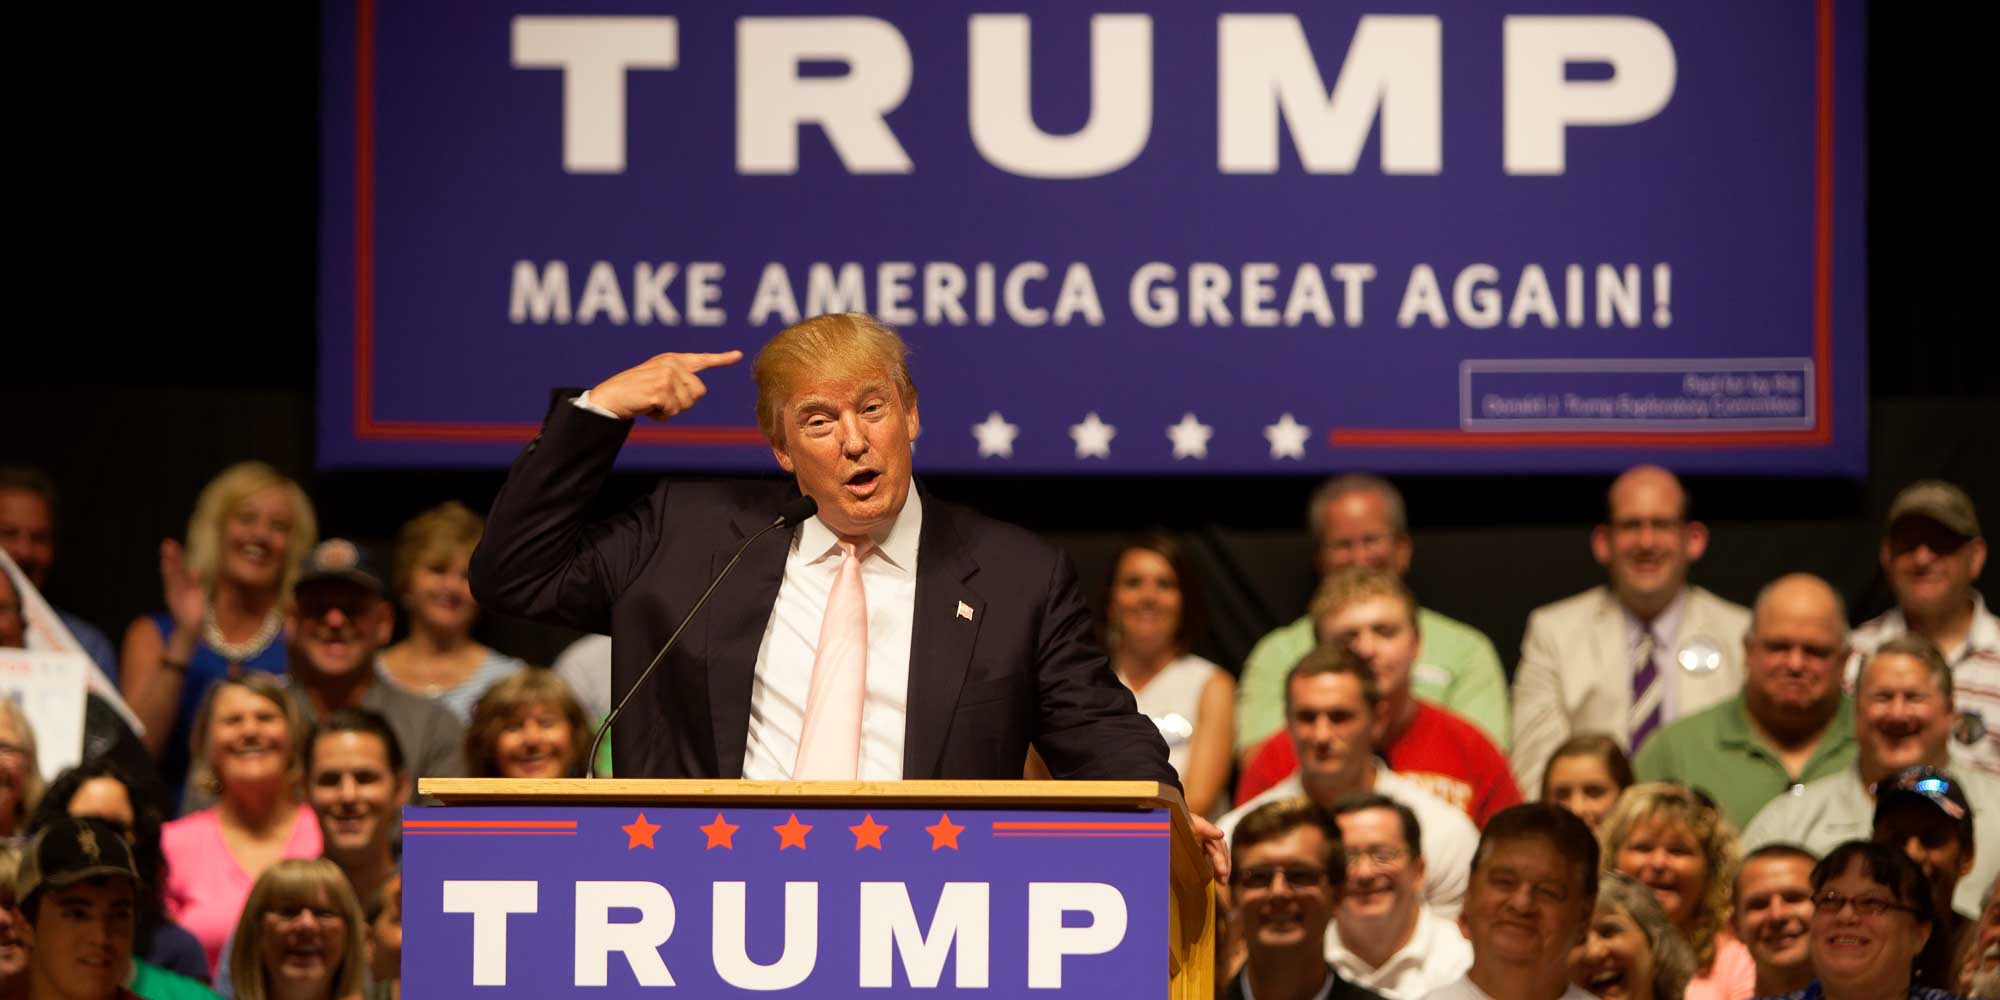 Donald Trump, en juillet 2015, au début de la campagne qui l'a mené à la présidence des États-Unis, le 8 novembre 2016. Photo par sgtphoto/Depositphotos.com